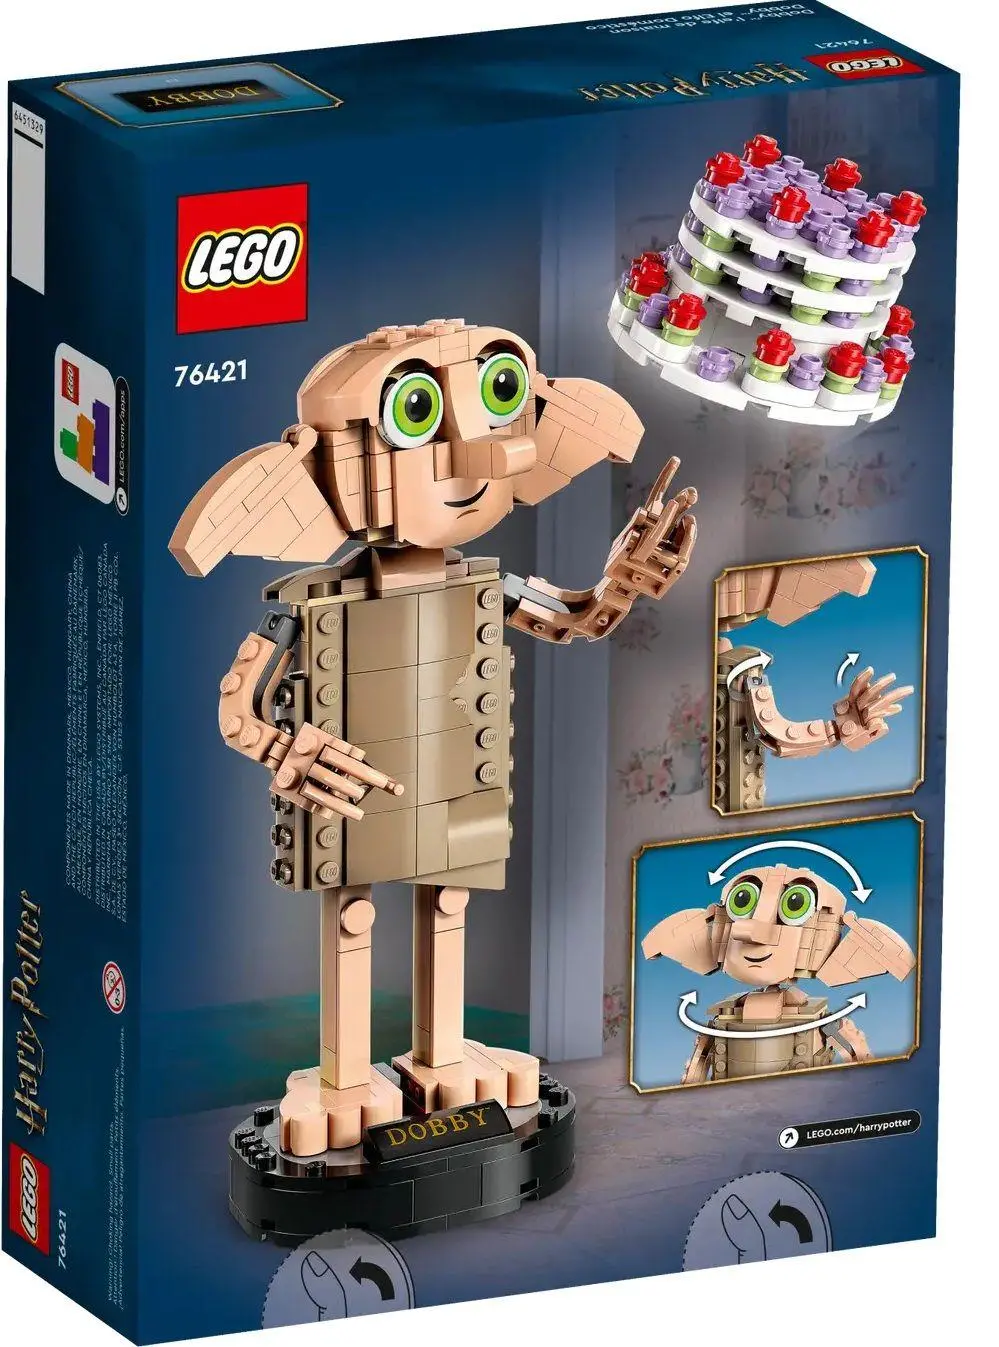 LEGO Harry Potter - Dobby the House-Elf - 76421 - image 1